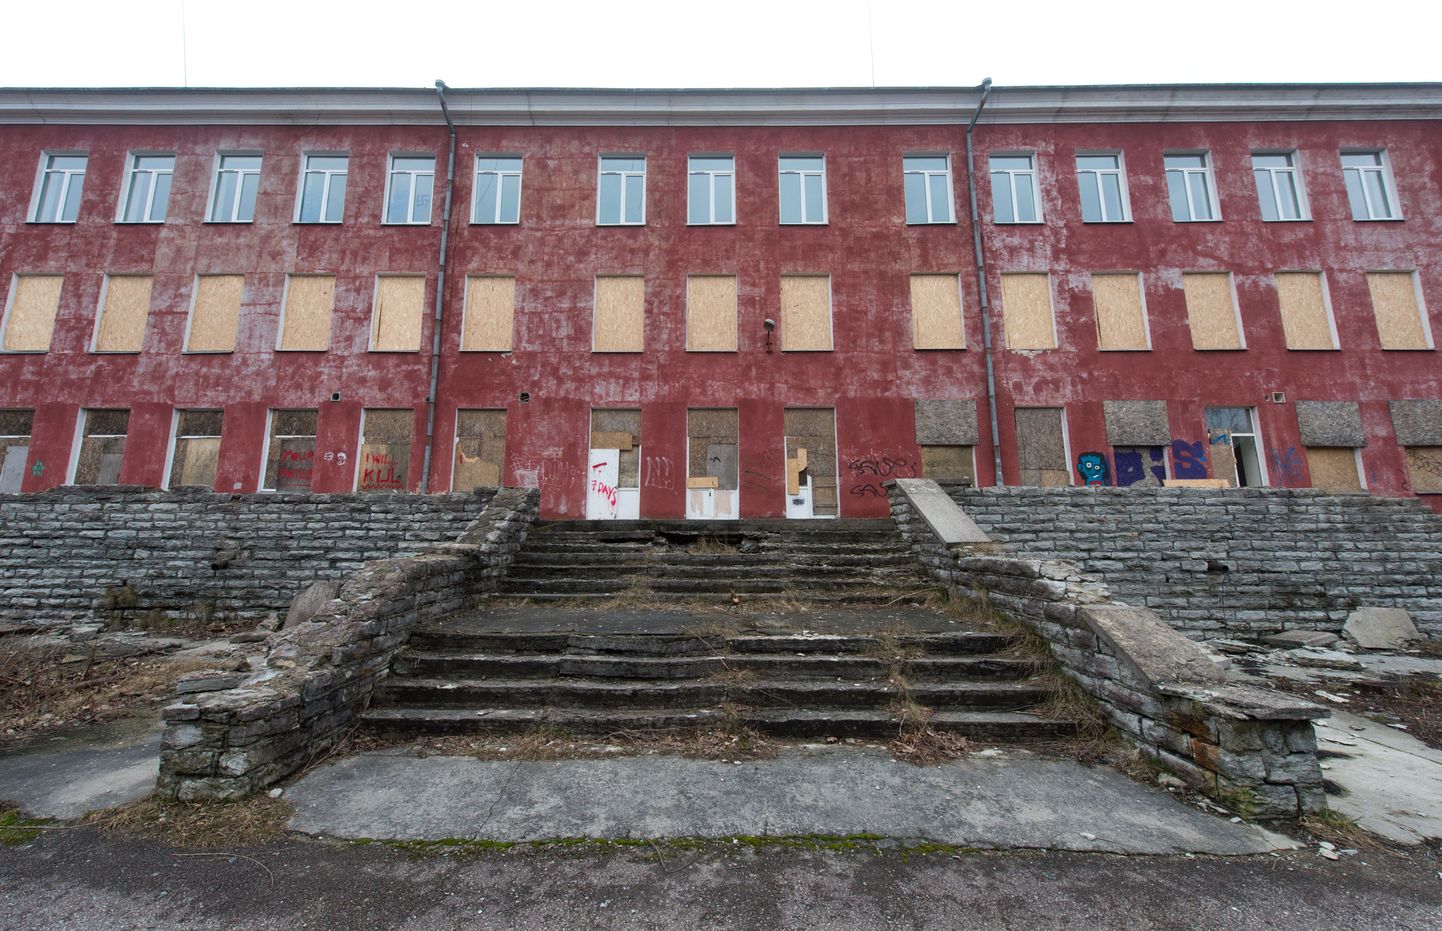 As Infortar tahab Nõmmel Sanatooriumi pargis asuvatesse tühjadesse hoonetesse rajada korterid, lasteaia ja seltsimaja.